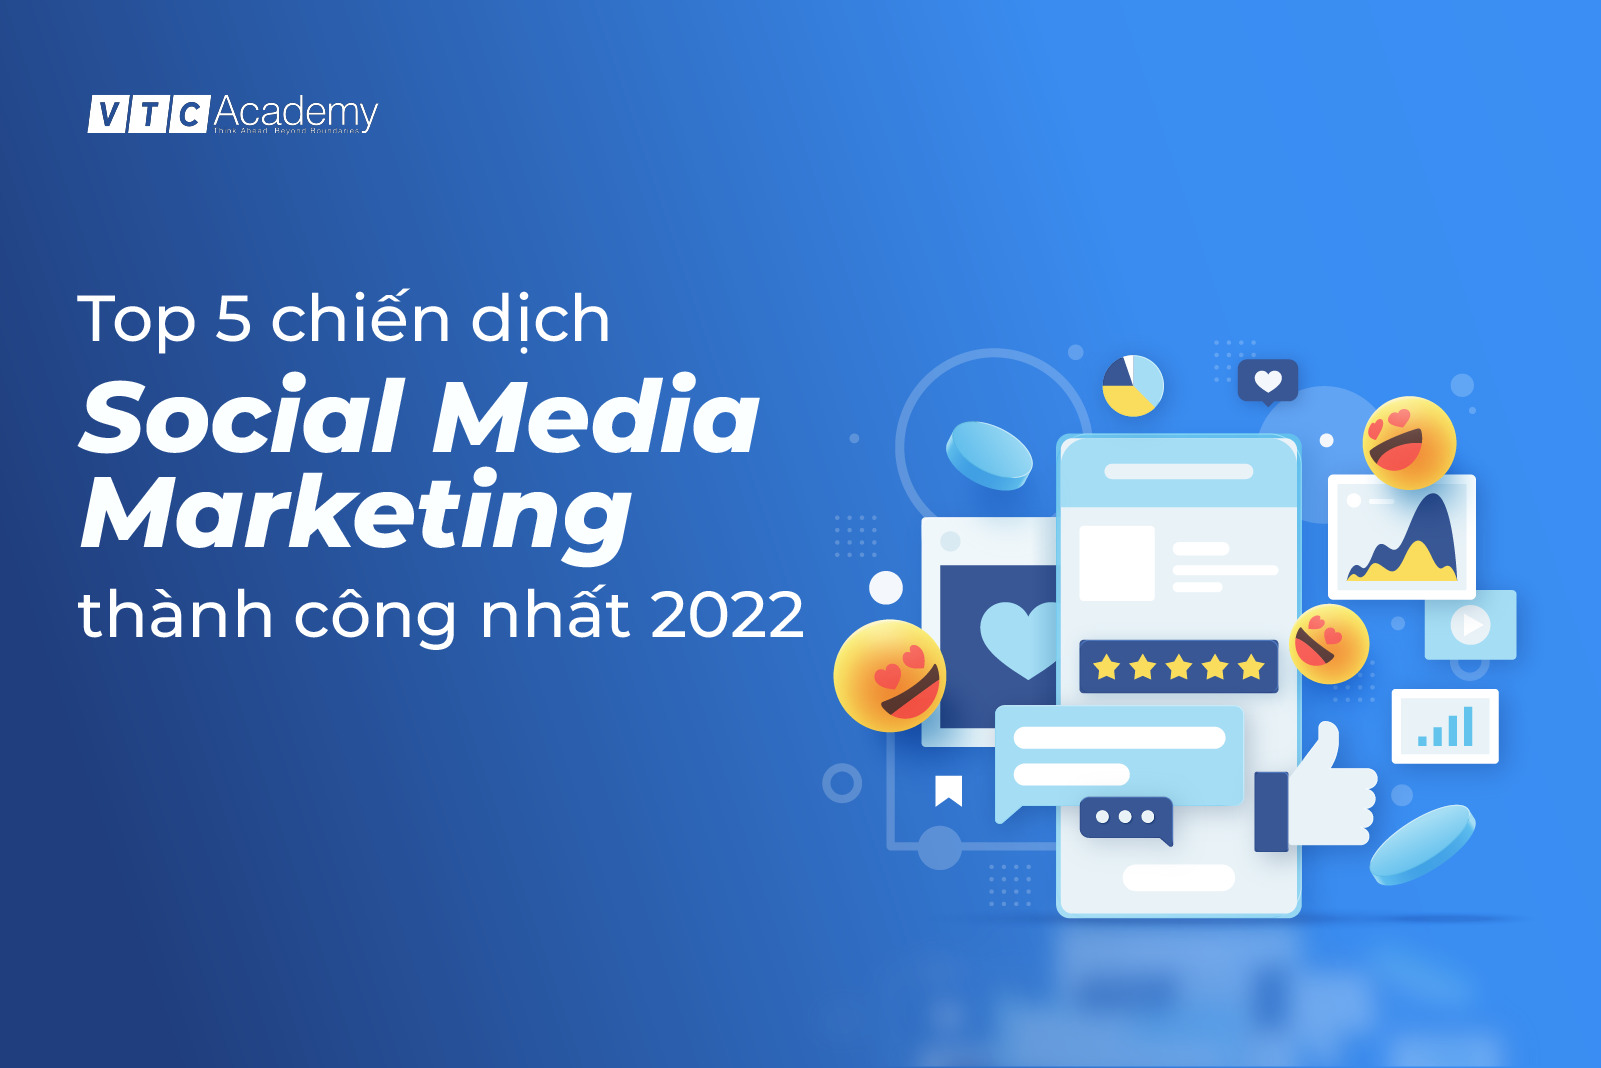 Nhìn lại: Top 5 chiến dịch Social Media Marketing thành công nhất 2022